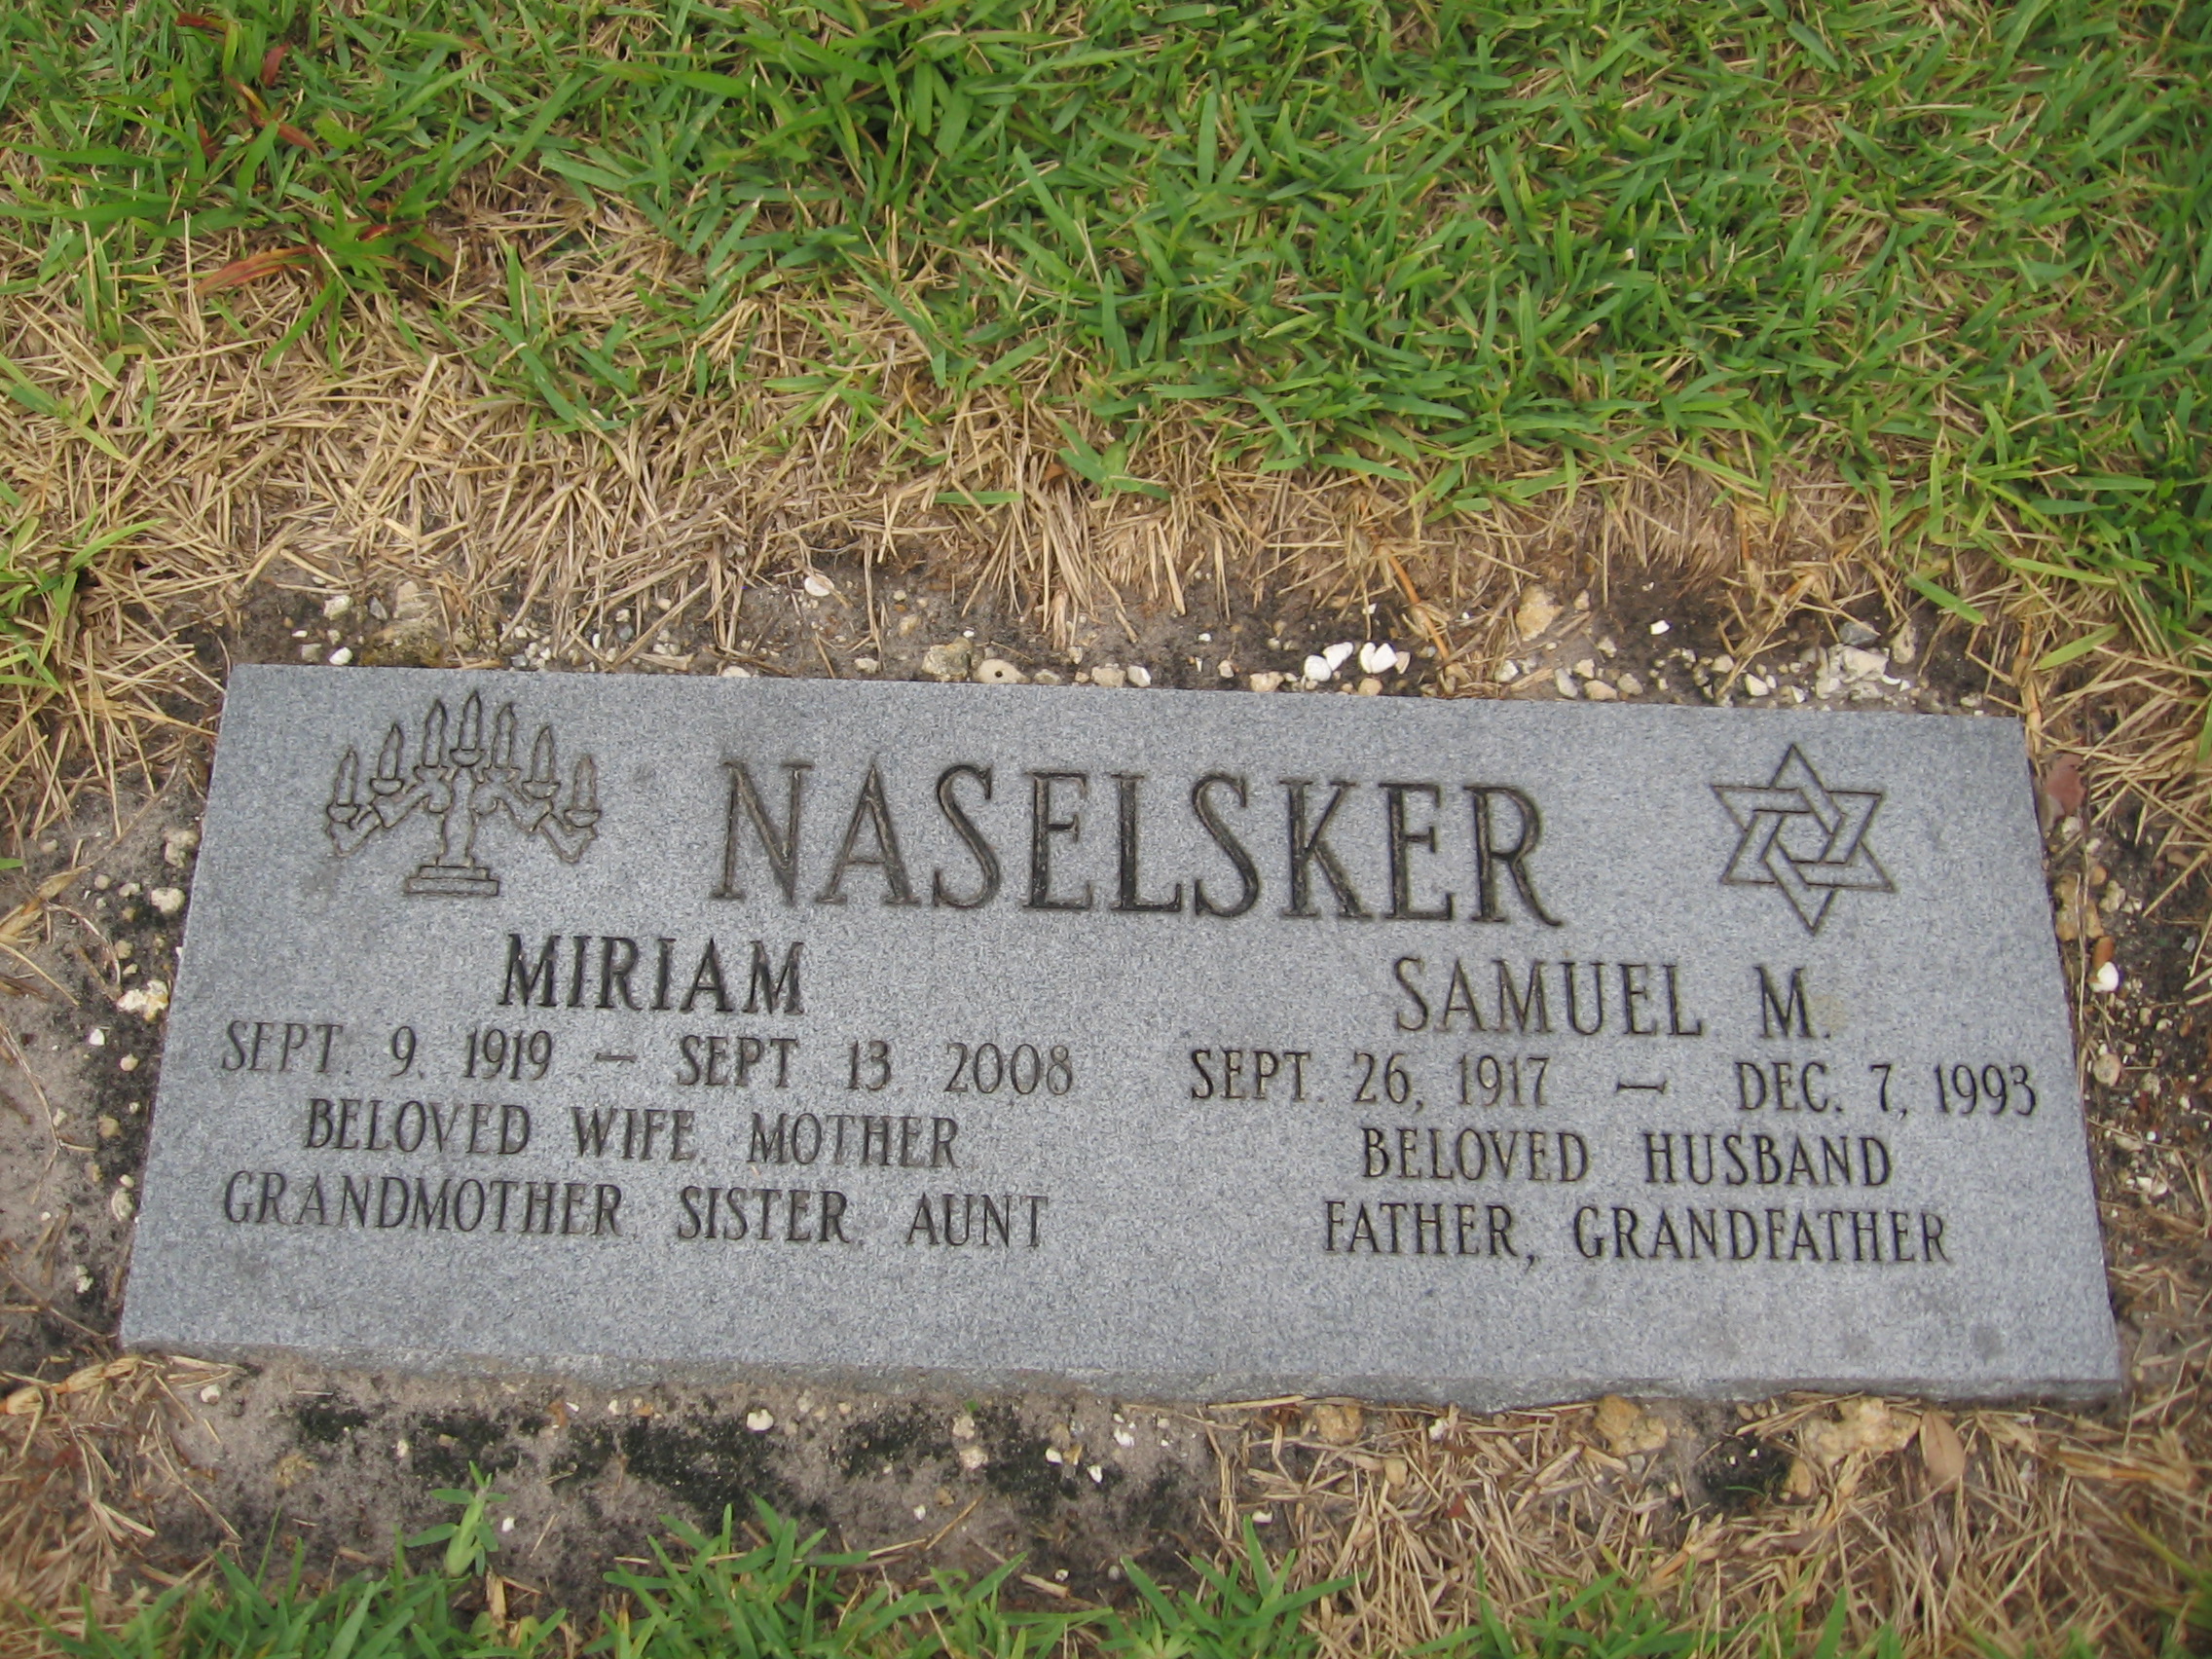 Samuel M Naselsker